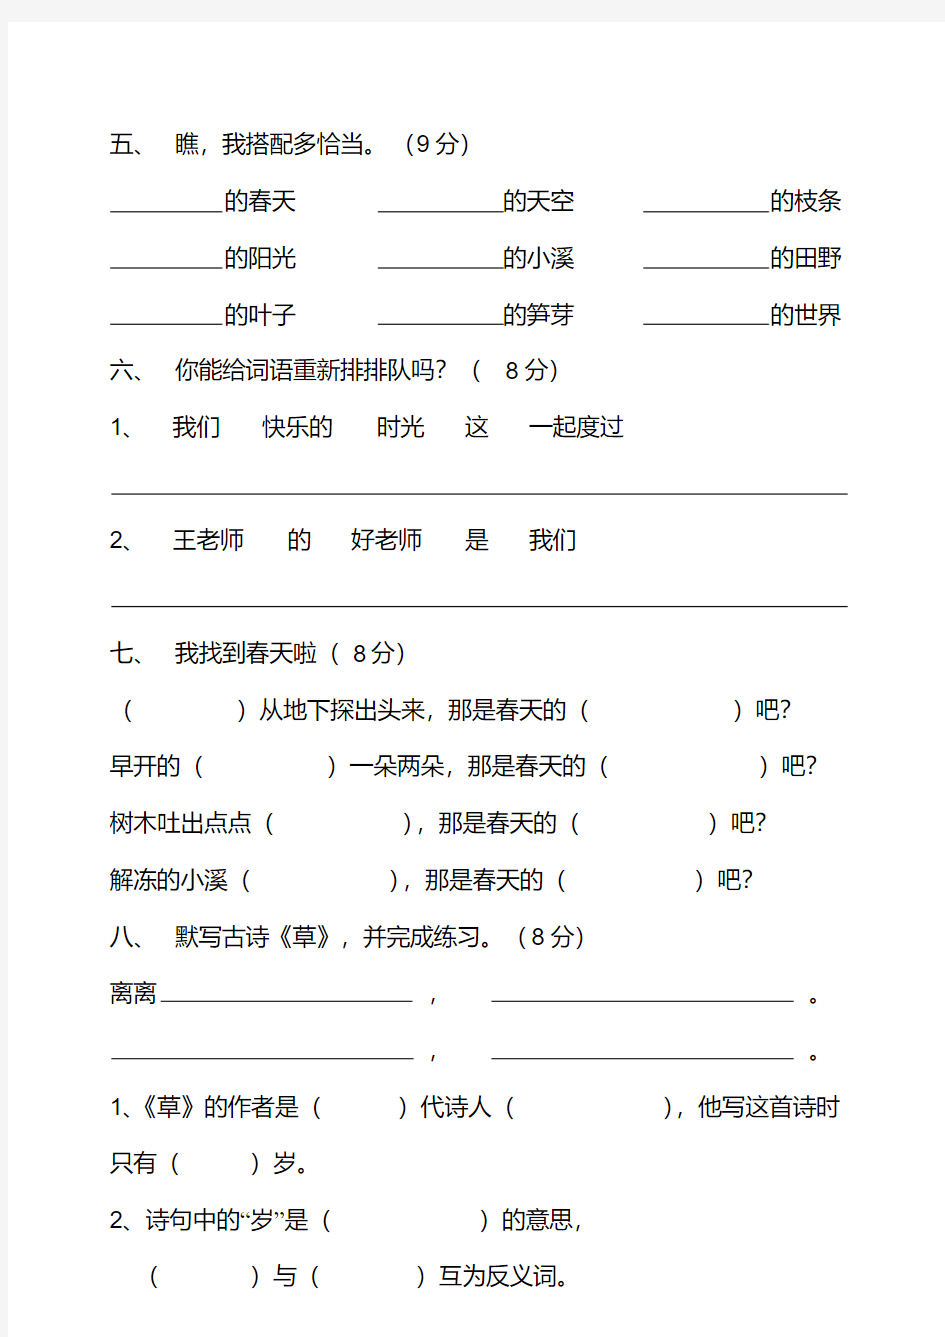 (完整word)二年级下册语文试卷全集.pdf